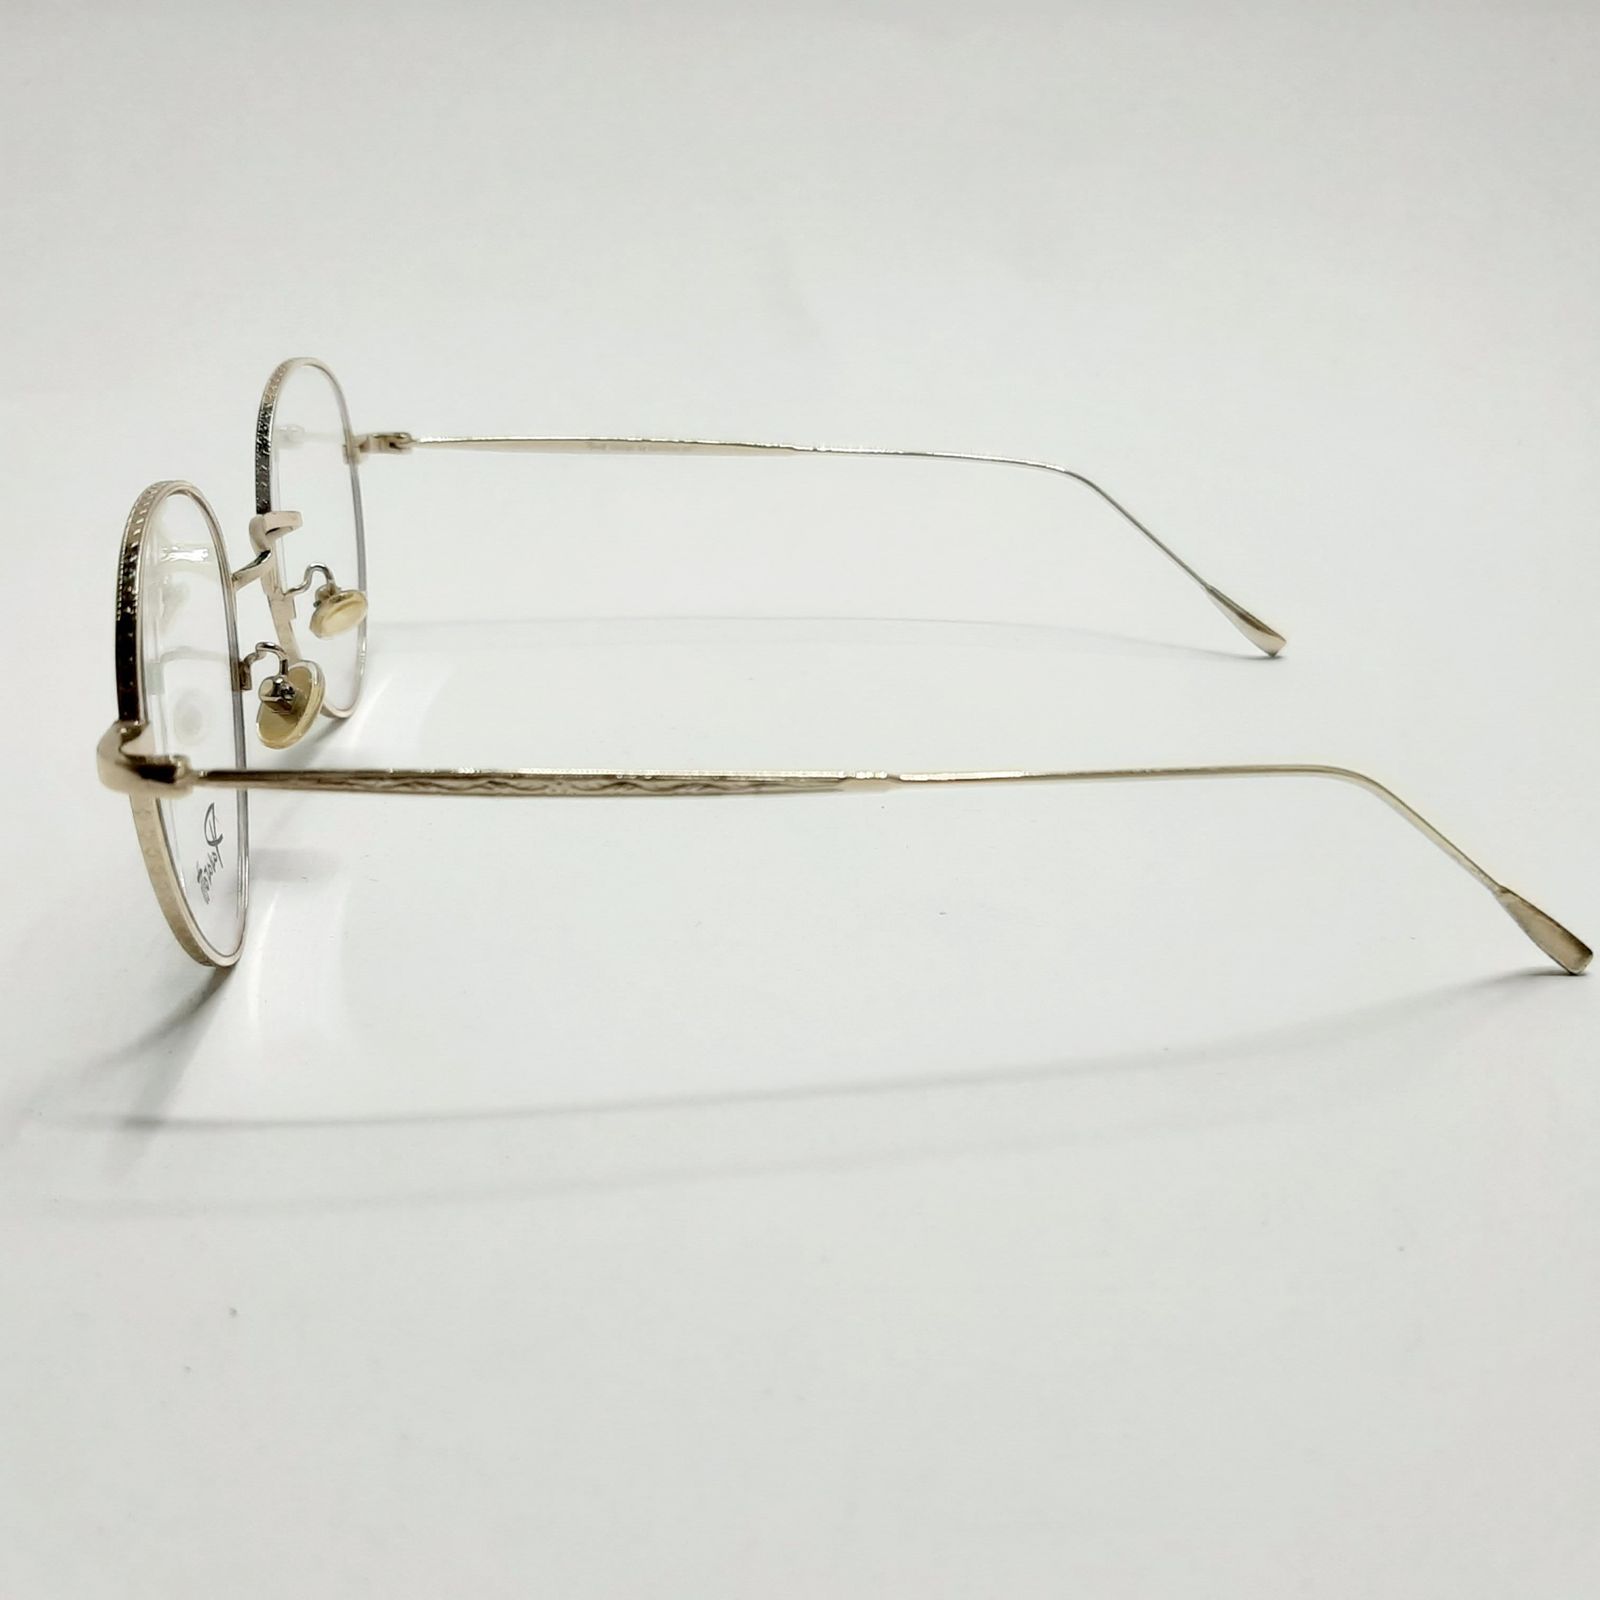 فریم عینک طبی پاواروتی مدل P52059c6 -  - 5